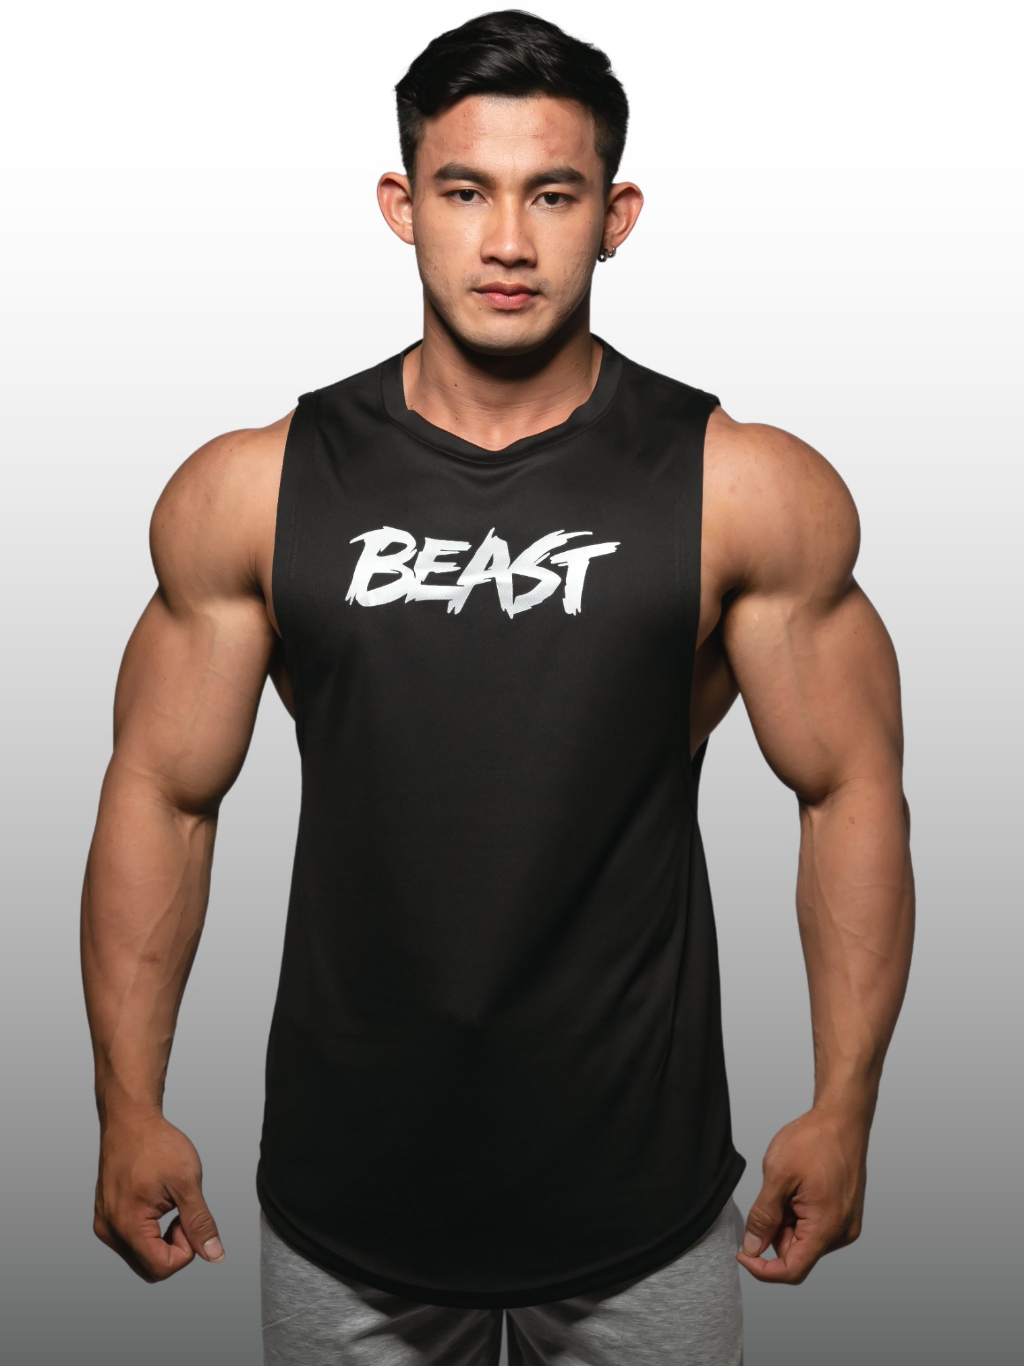 beast-เสื้อแขนกุดเว้าแขนกว้าง-drop-arm-sleeveless-muscle-shirt